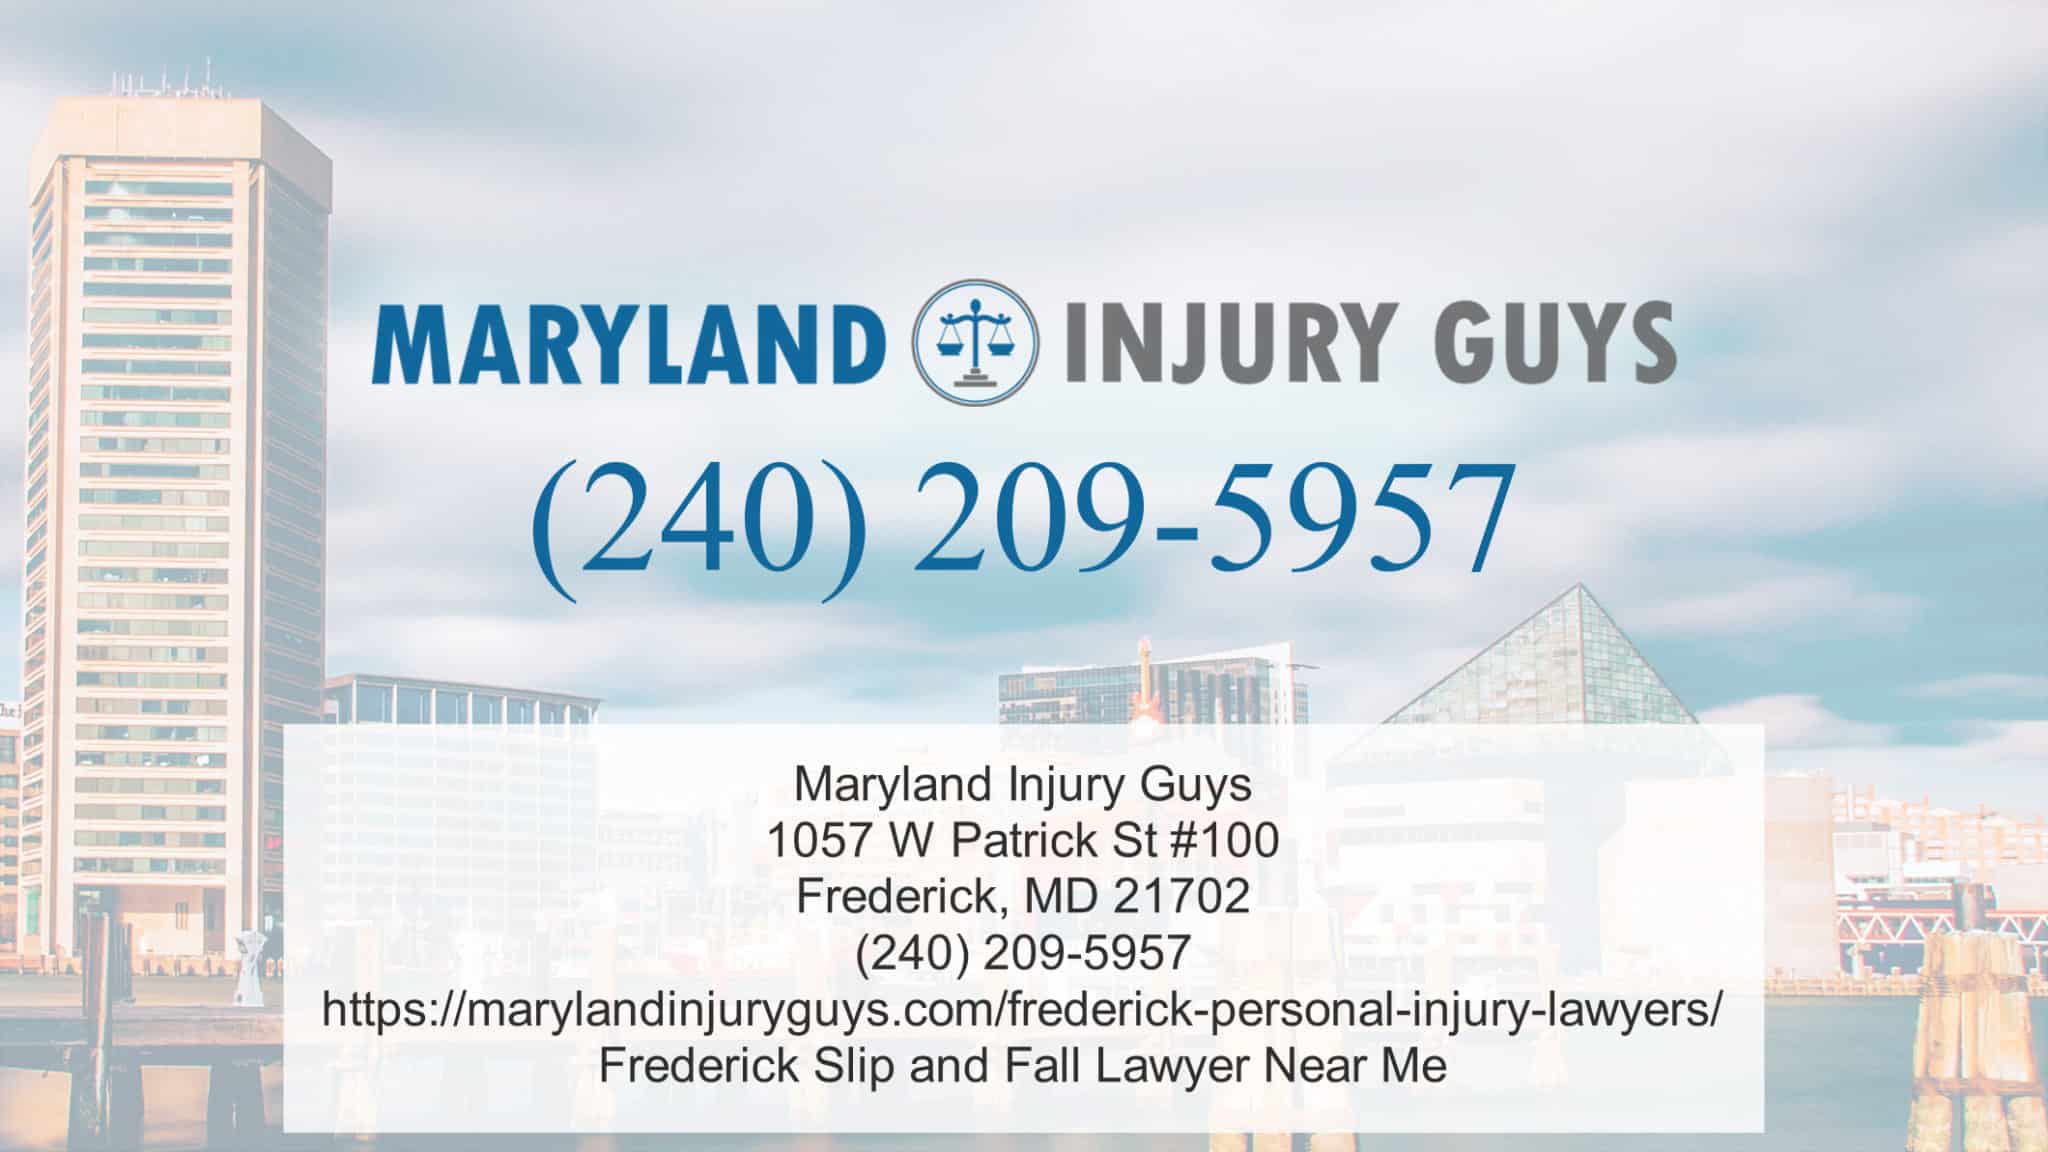 Frederick-Maryland-Injury-Guys-address-image.jpg